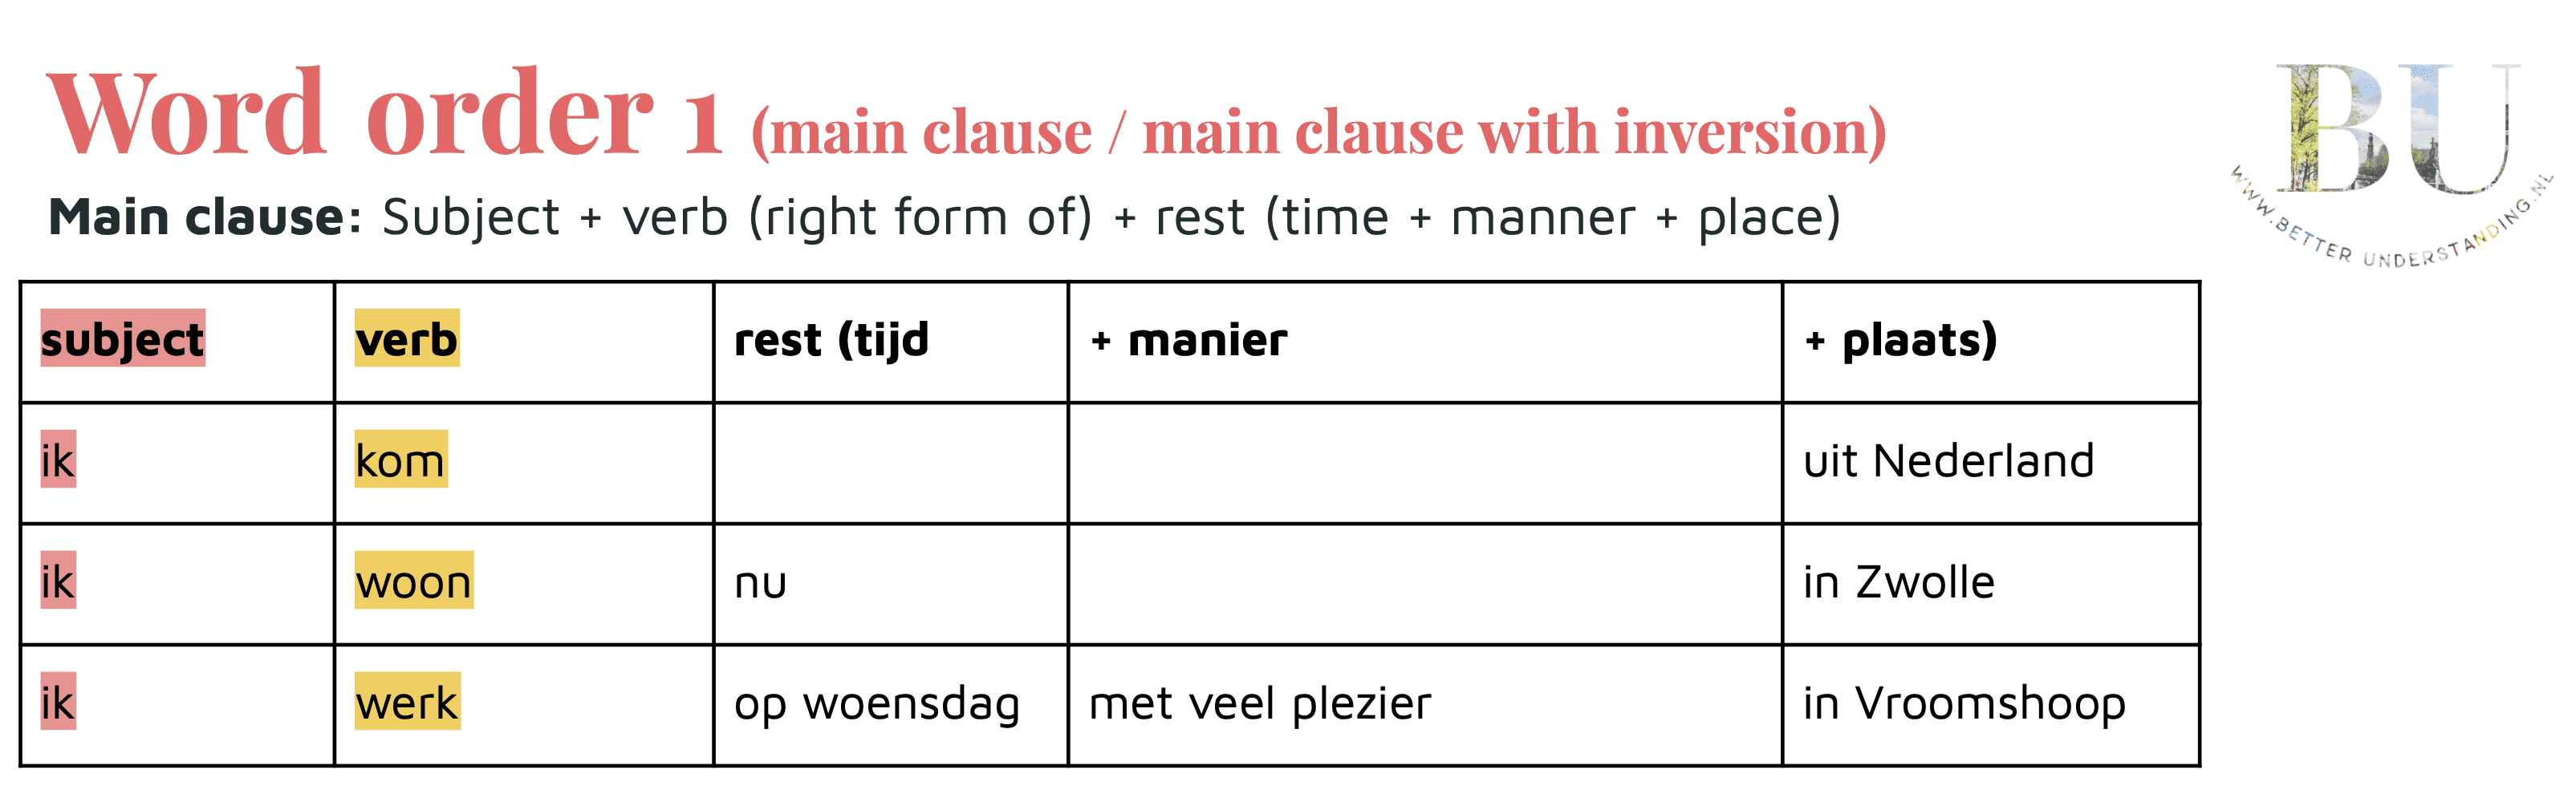 Dutch word order